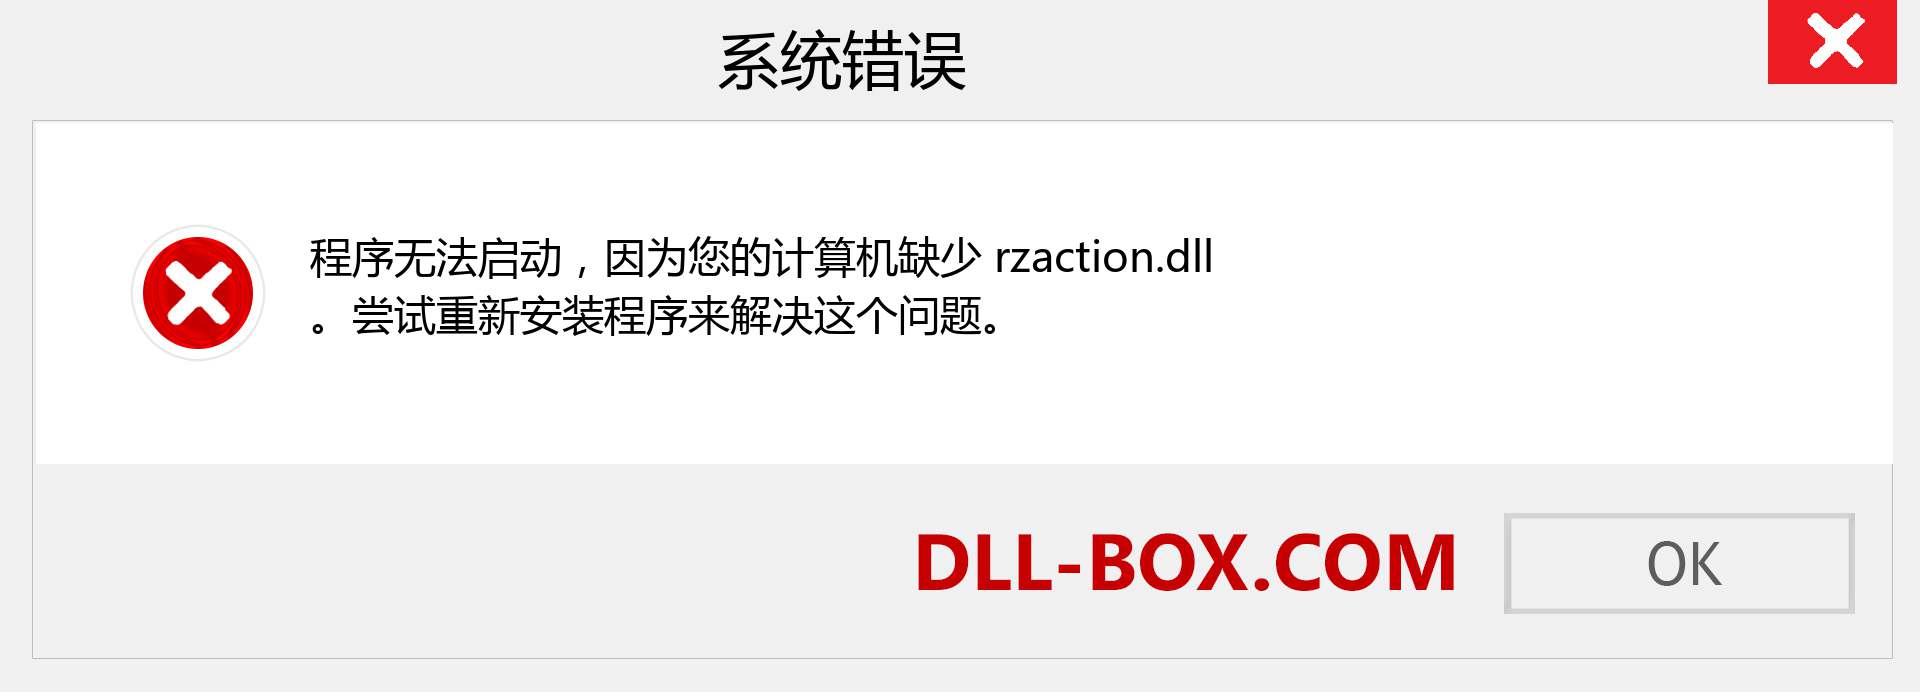 rzaction.dll 文件丢失？。 适用于 Windows 7、8、10 的下载 - 修复 Windows、照片、图像上的 rzaction dll 丢失错误